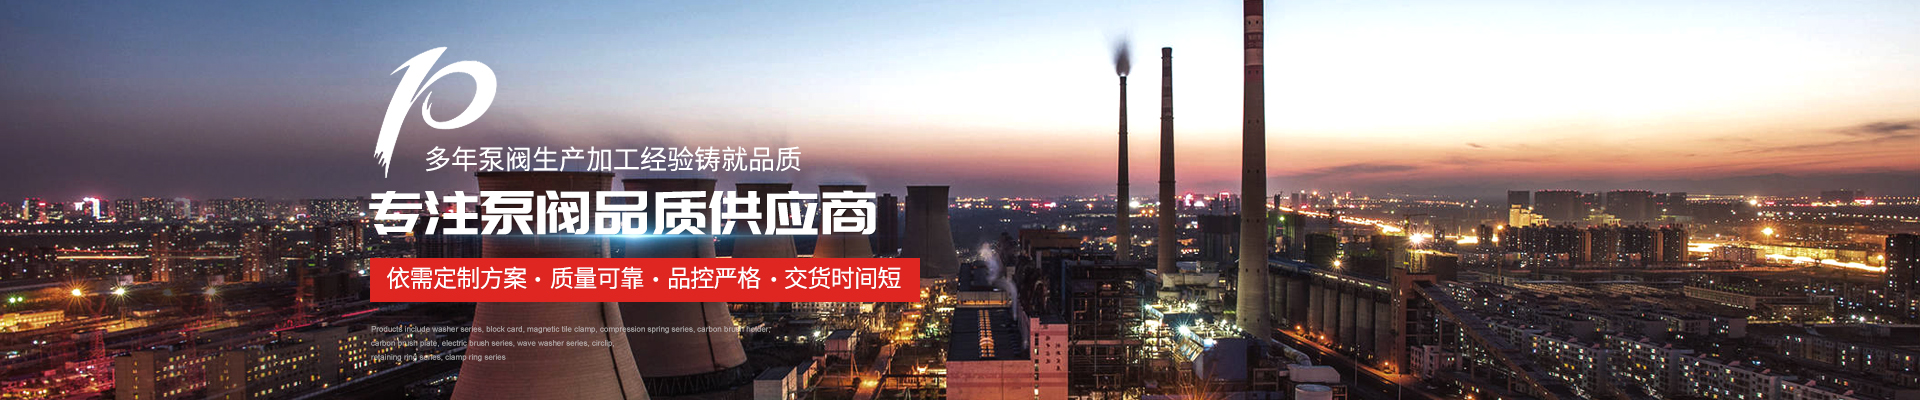 自吸泵廠家 - 上海高適泵閥有限公司